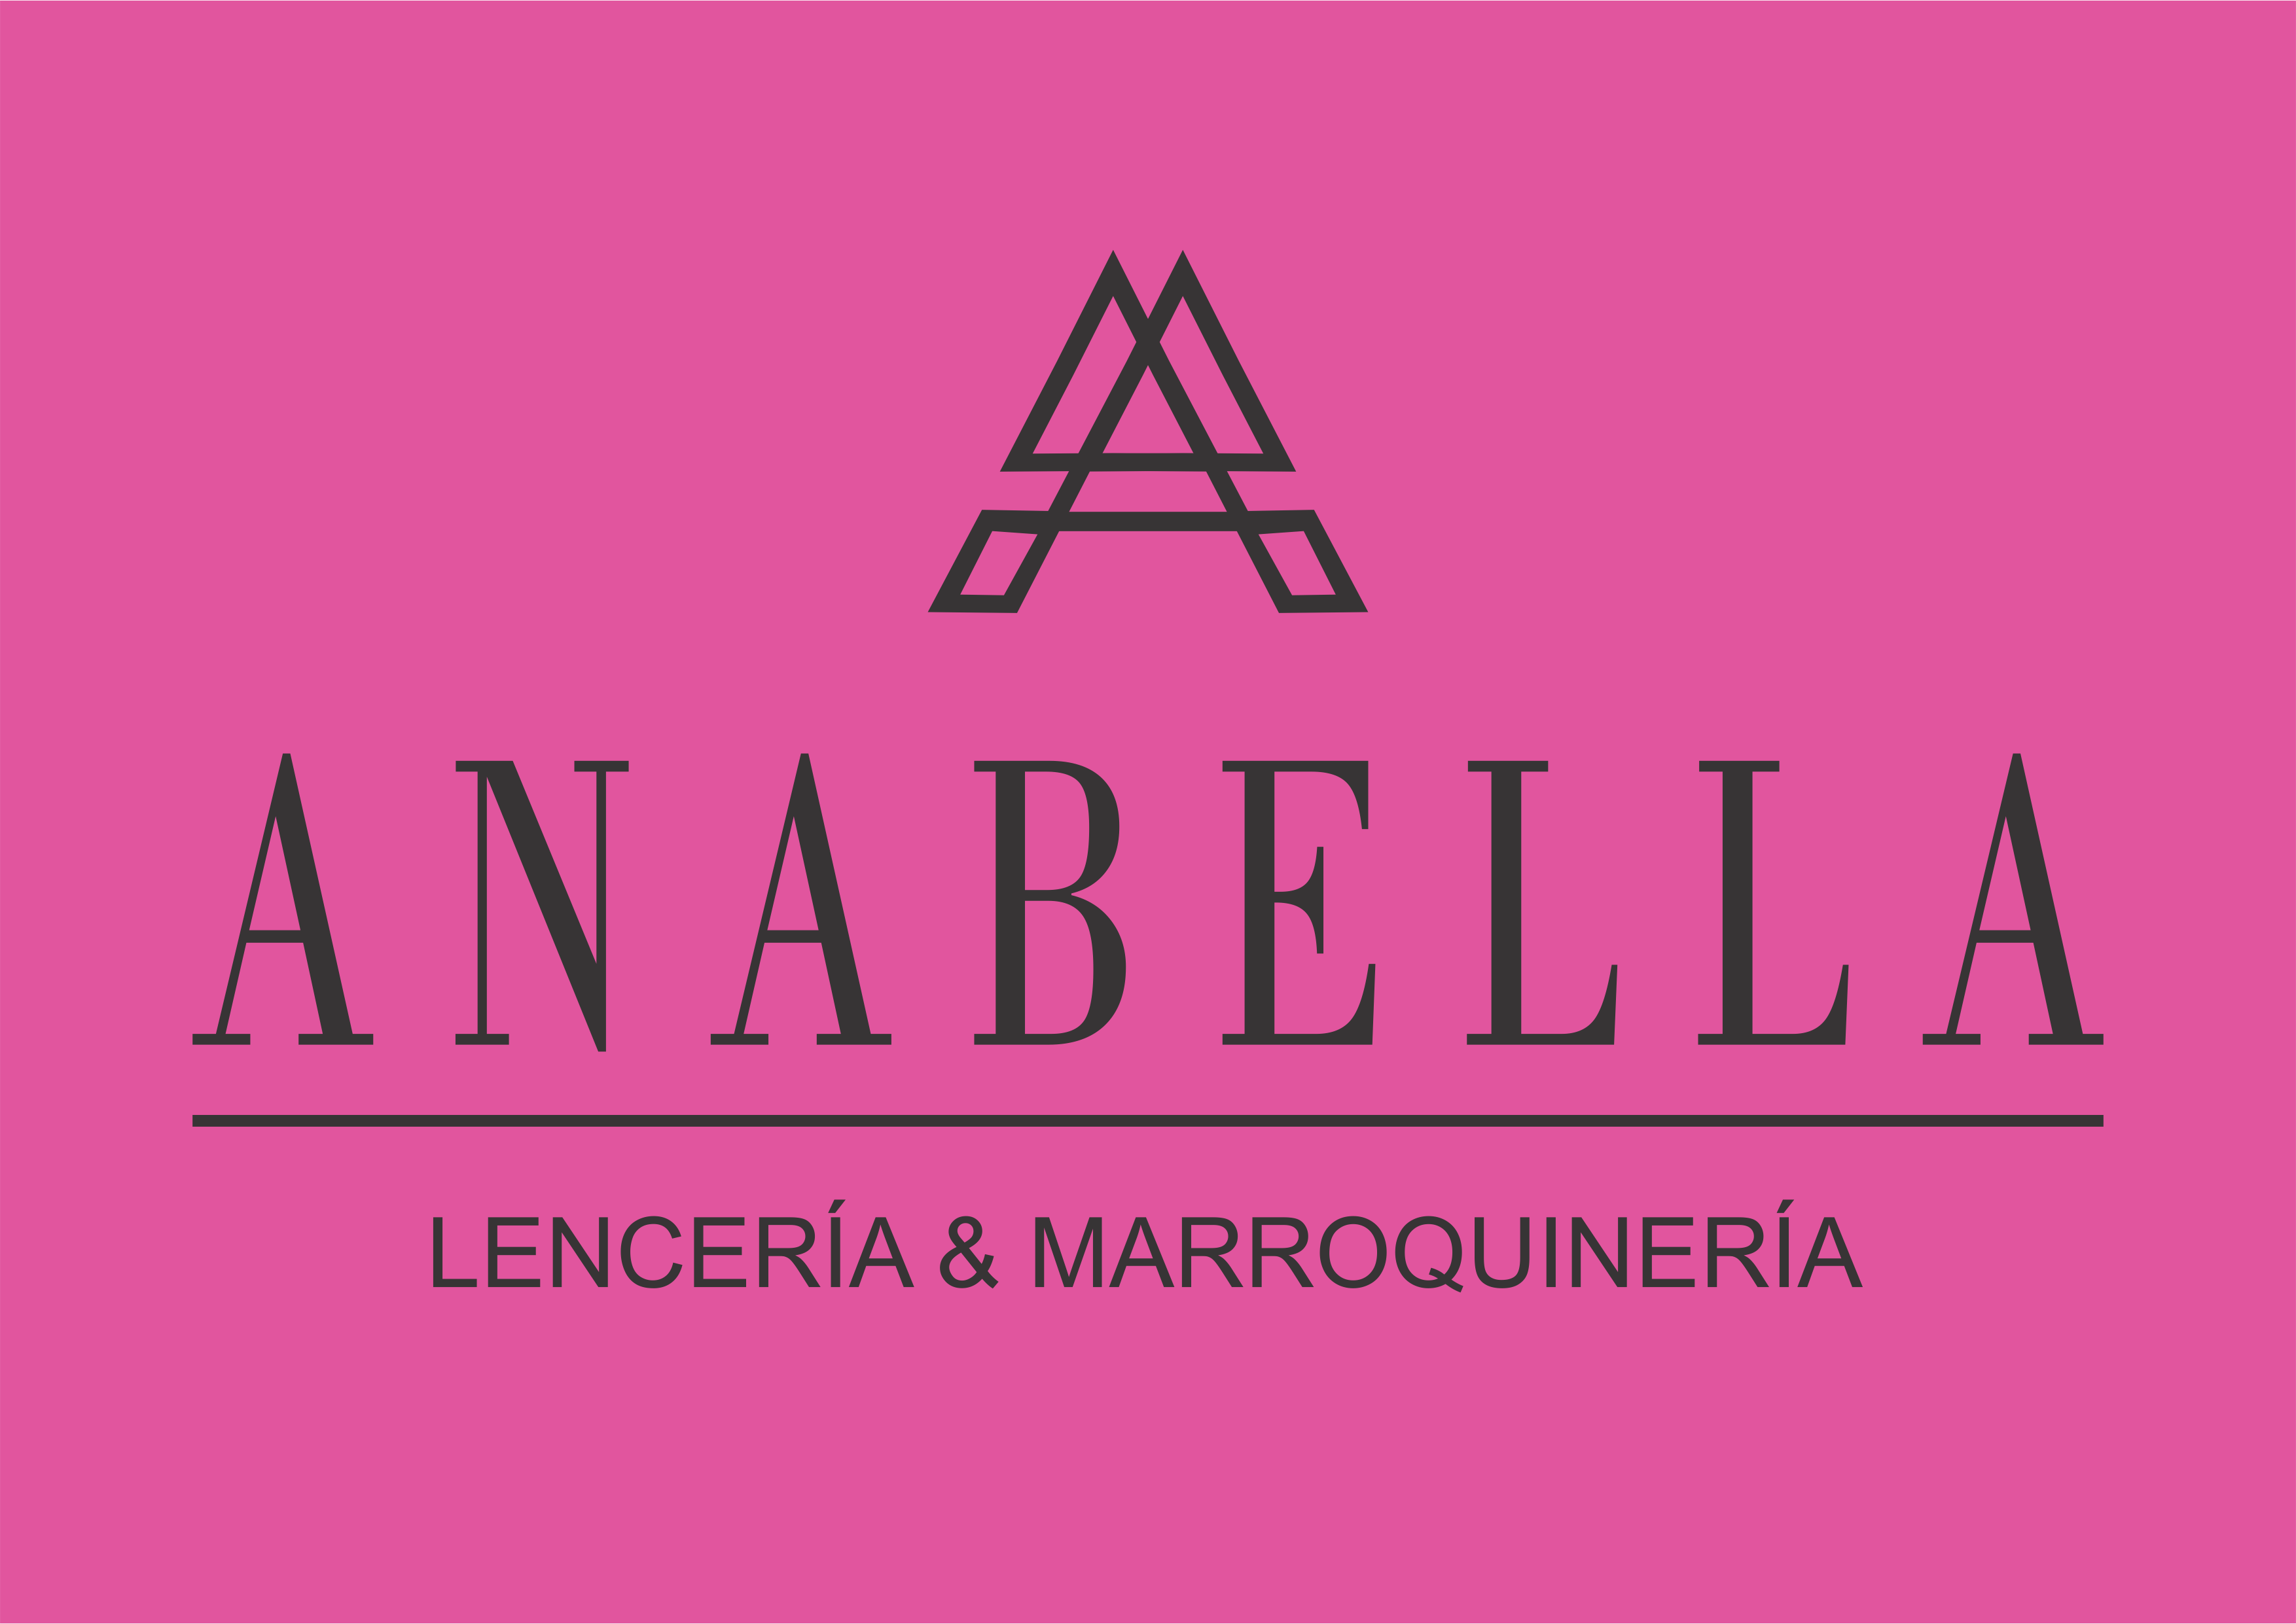 www.anabella.com.ar